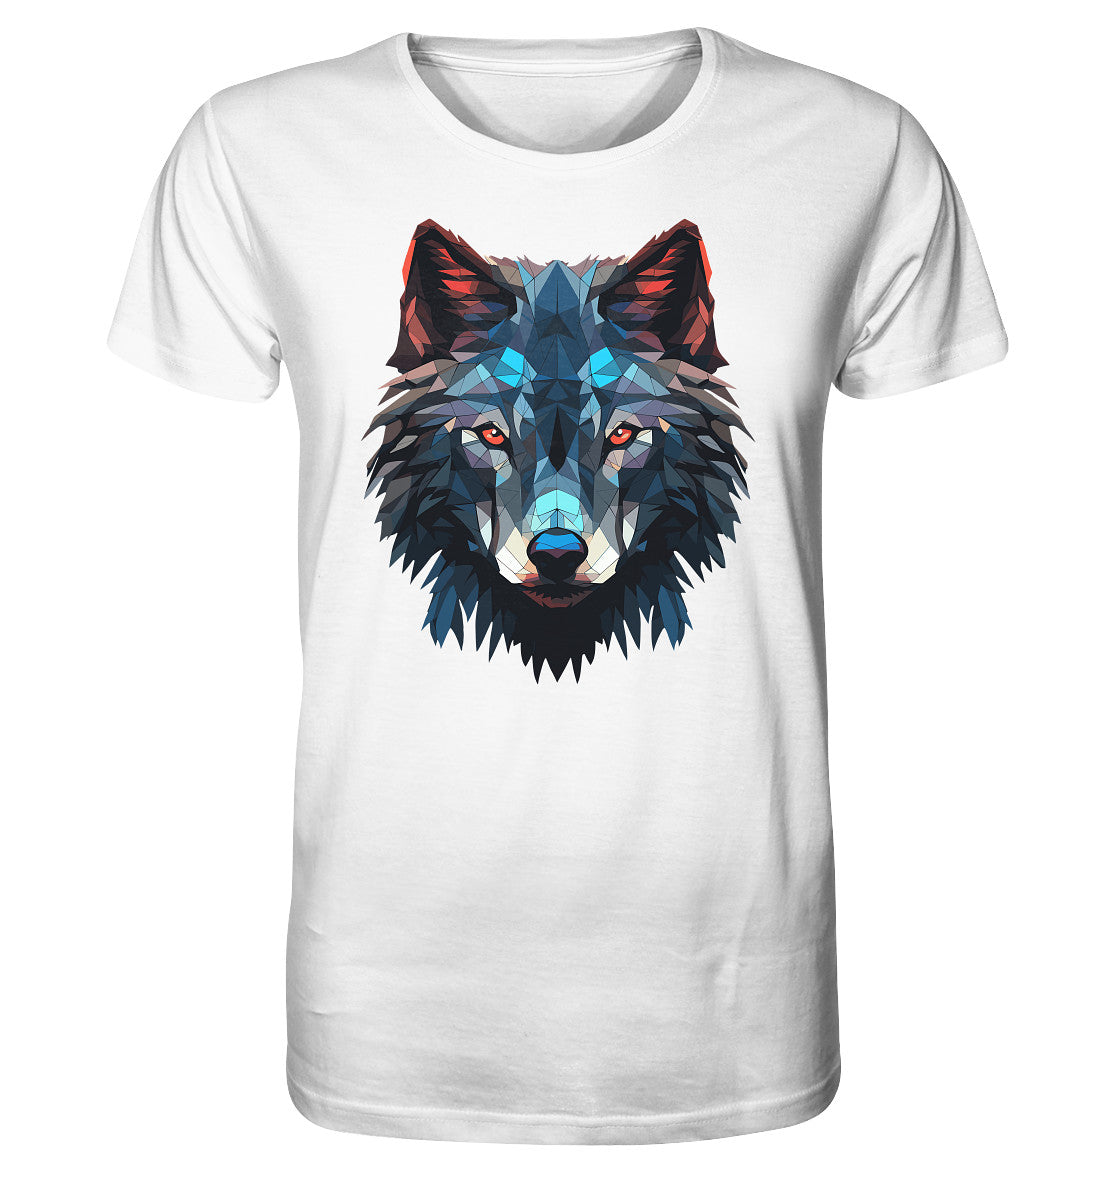 Herren T-Shirt mit Wolfmotiv "Polygon Wolf" - Mindprints Design